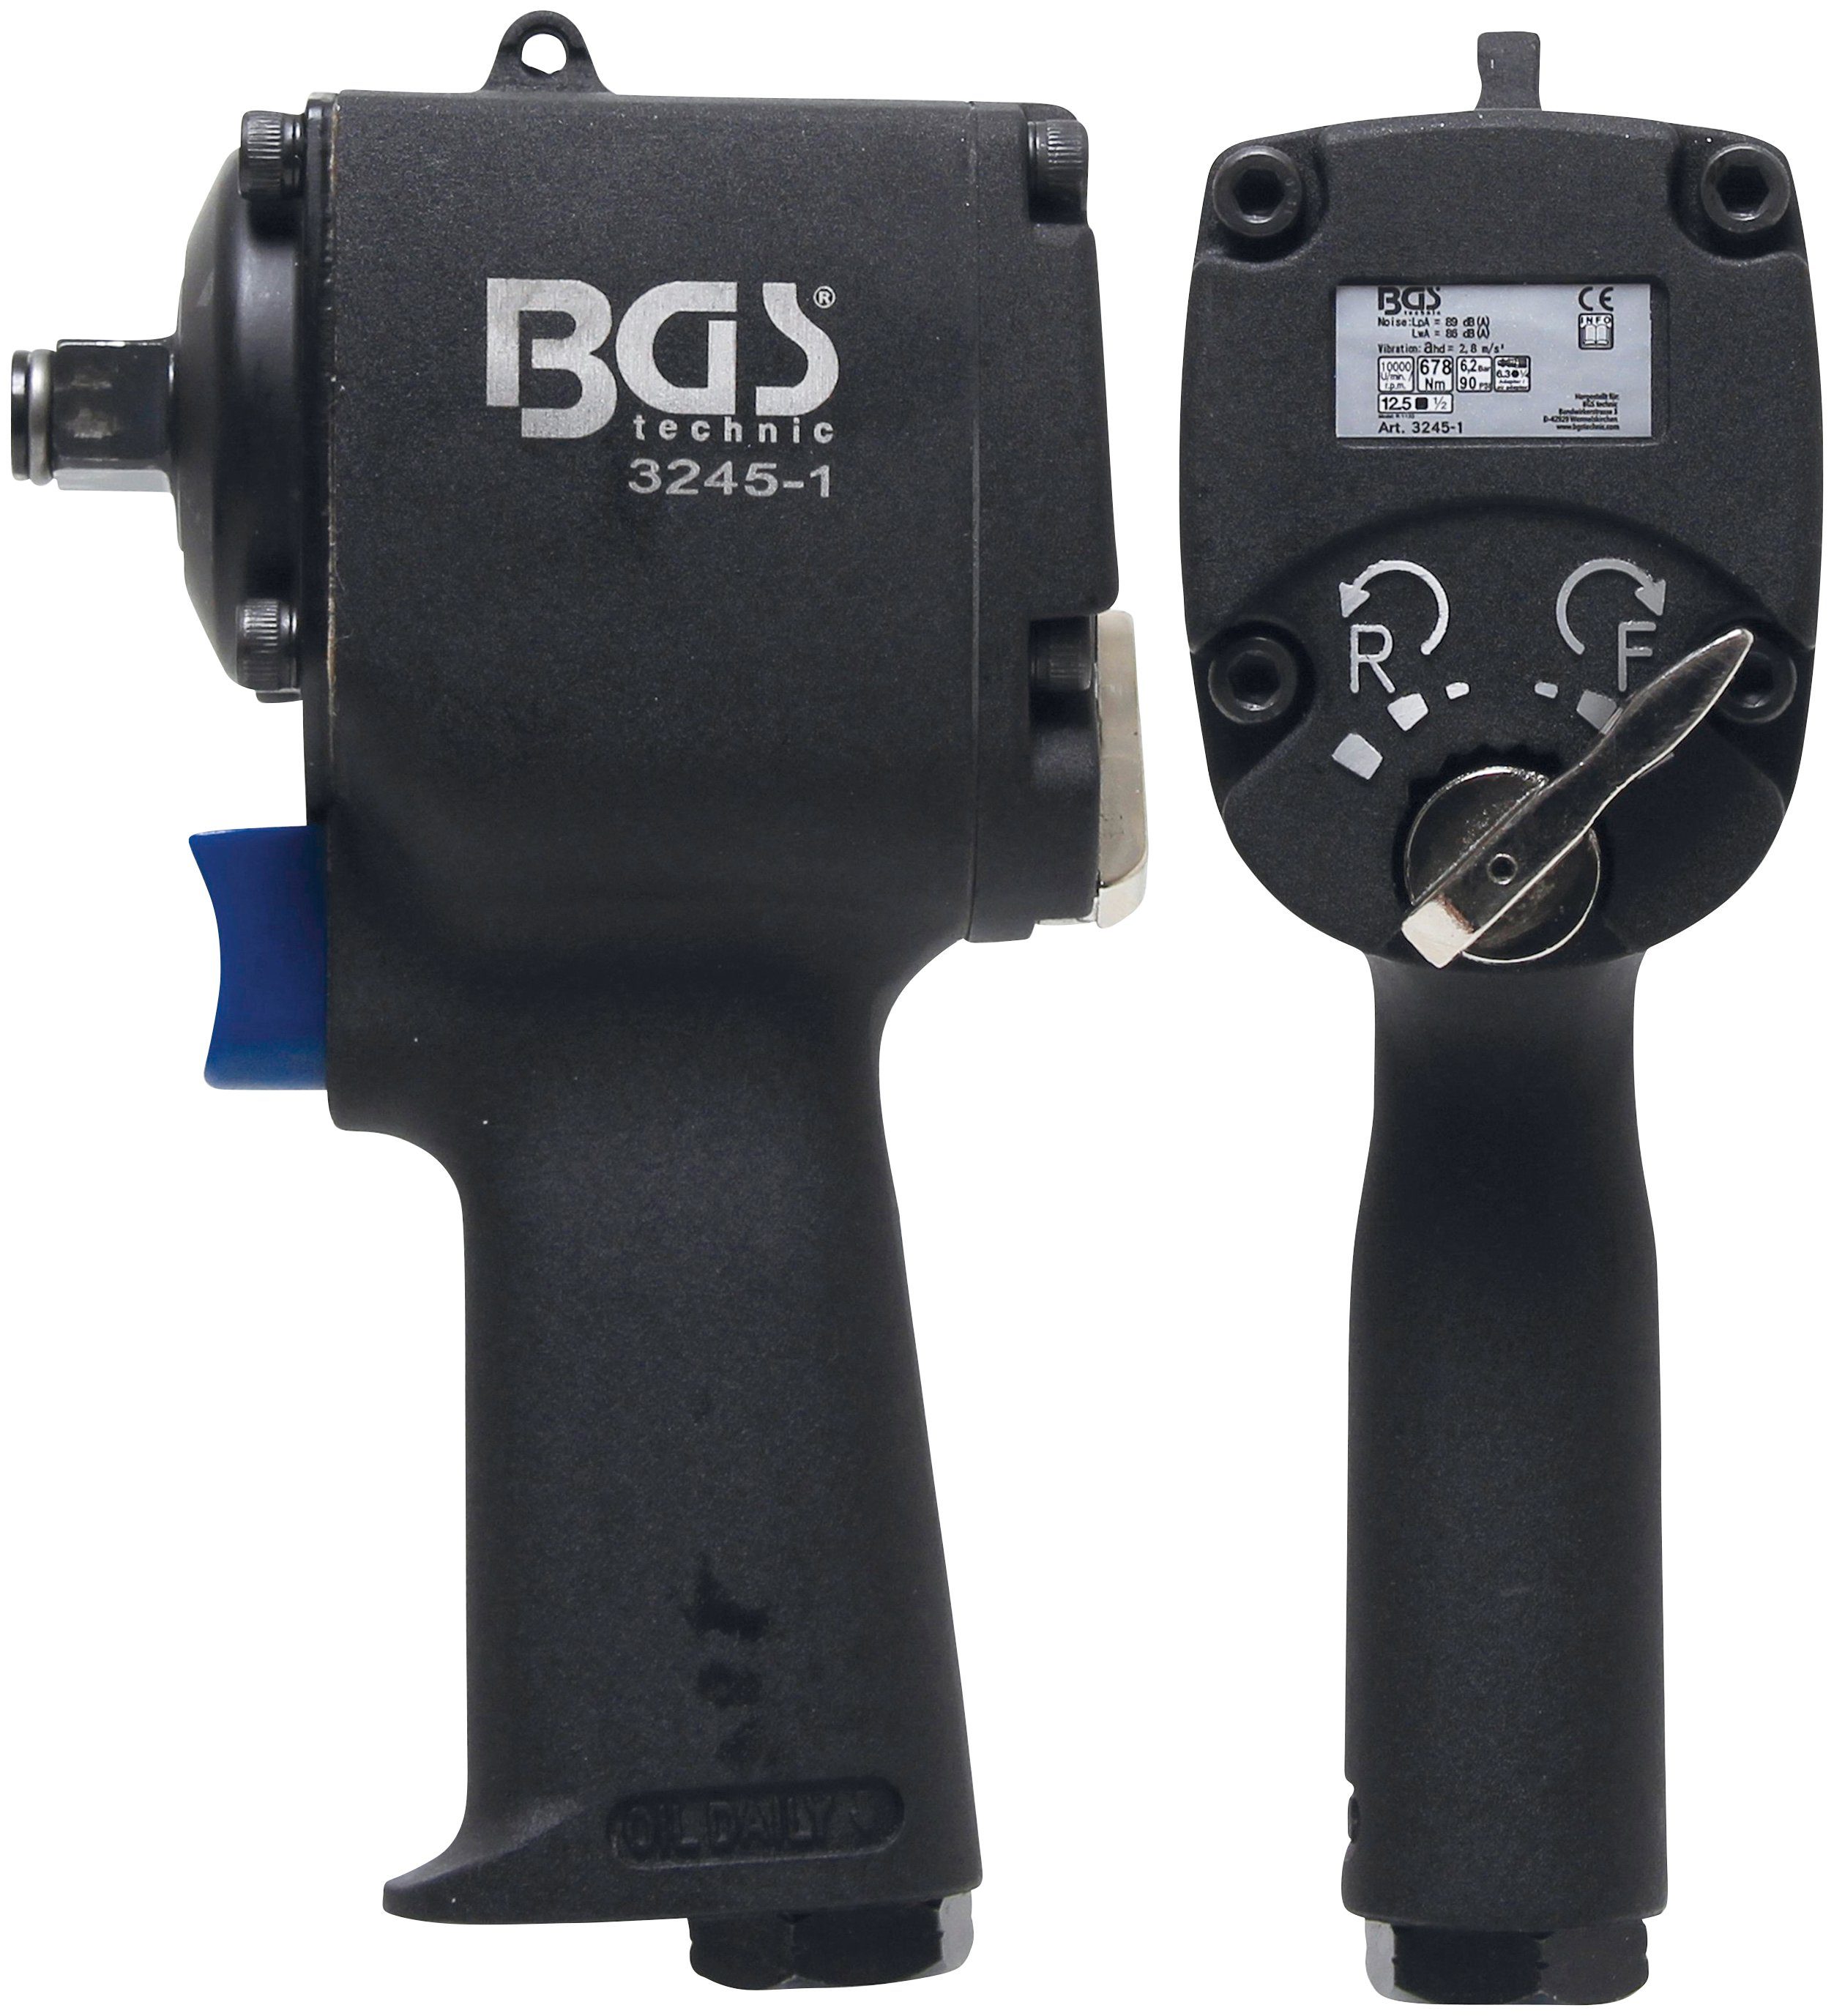 BGS Druckluft-Schlagschrauber, 10000 U/min, 678 Nm | Schlagschrauber